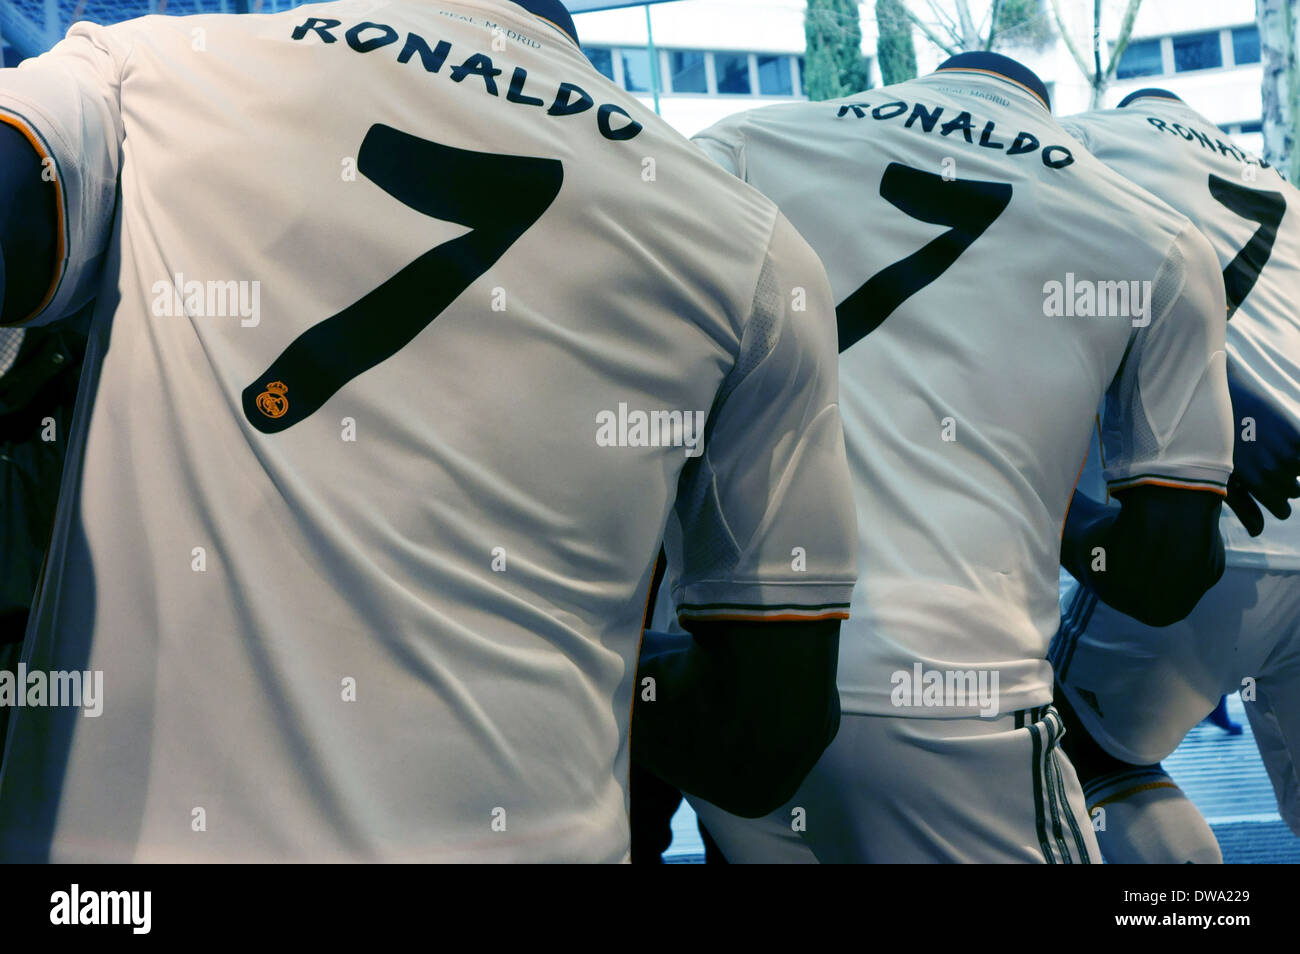 Shirt Ronaldo Real Madrid en boutique officielle au Bernabeu, Espagne Banque D'Images